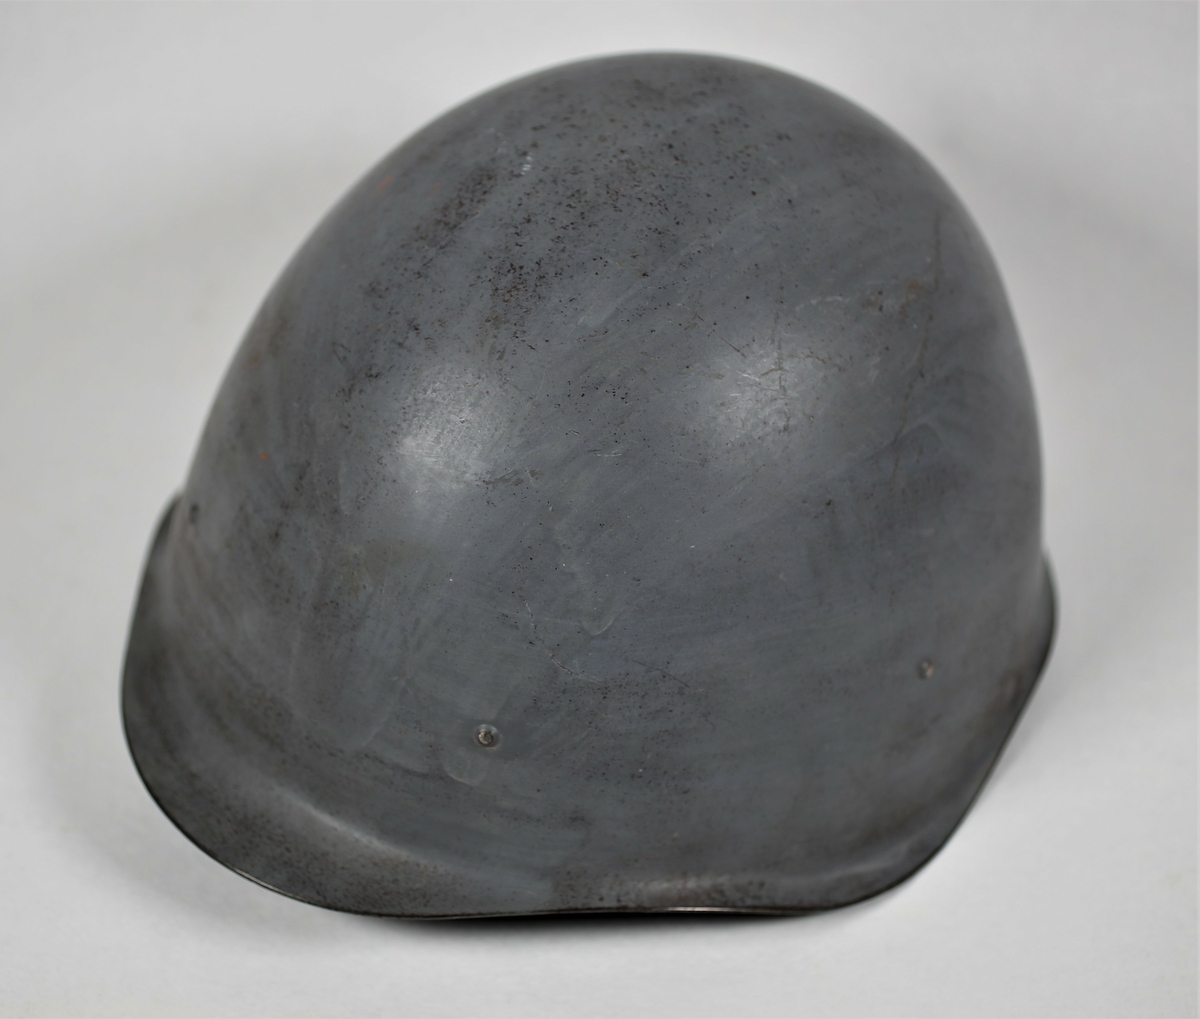 Russisk hjelm som ble brukt under Petsamo - Kirkenes operasjonen. Er med hakestropp.